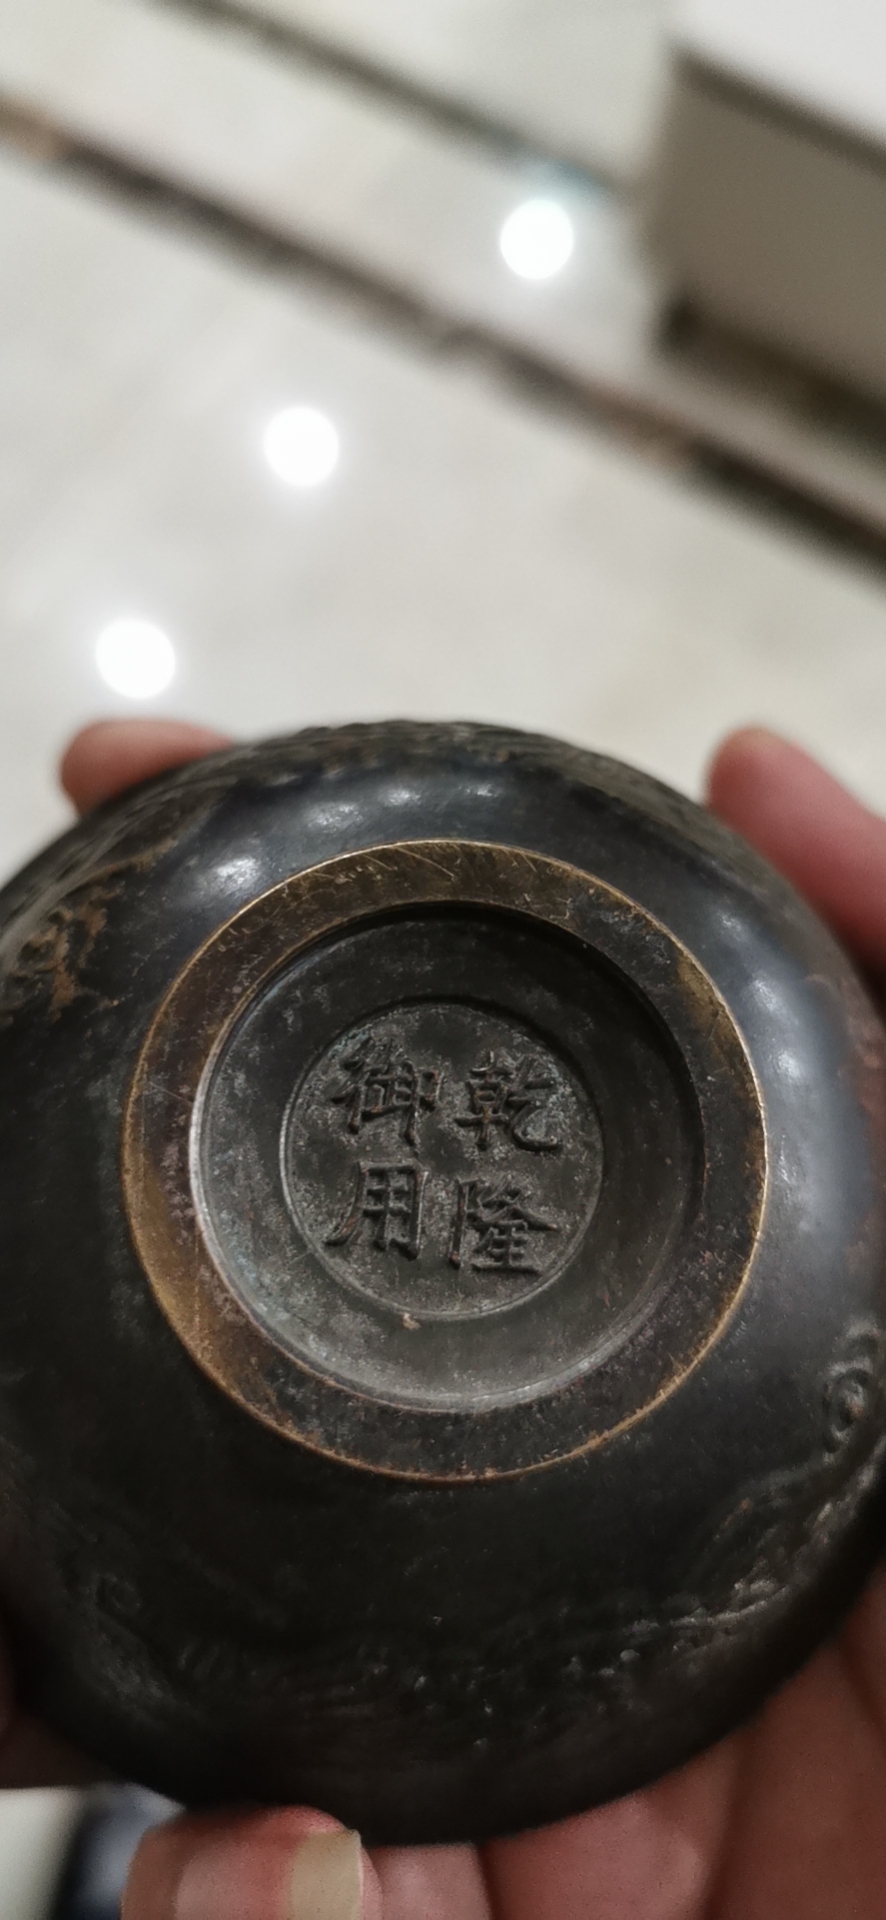 清朝的铜碗图片及价格图片